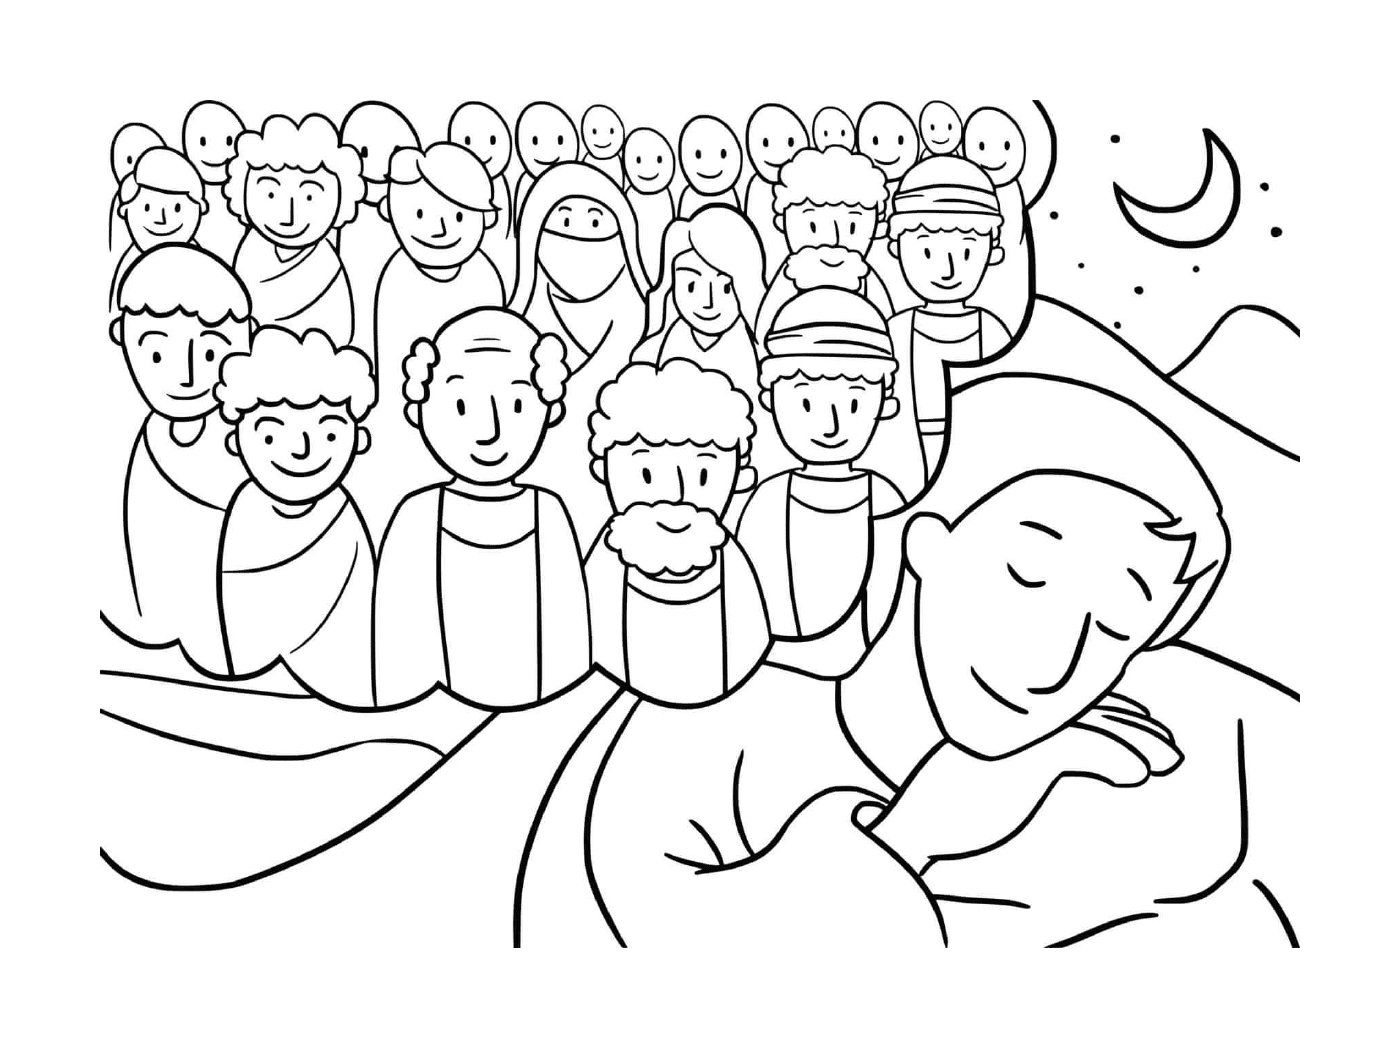  Gruppe von Menschen versammelte sich um einen schlafenden Mann 